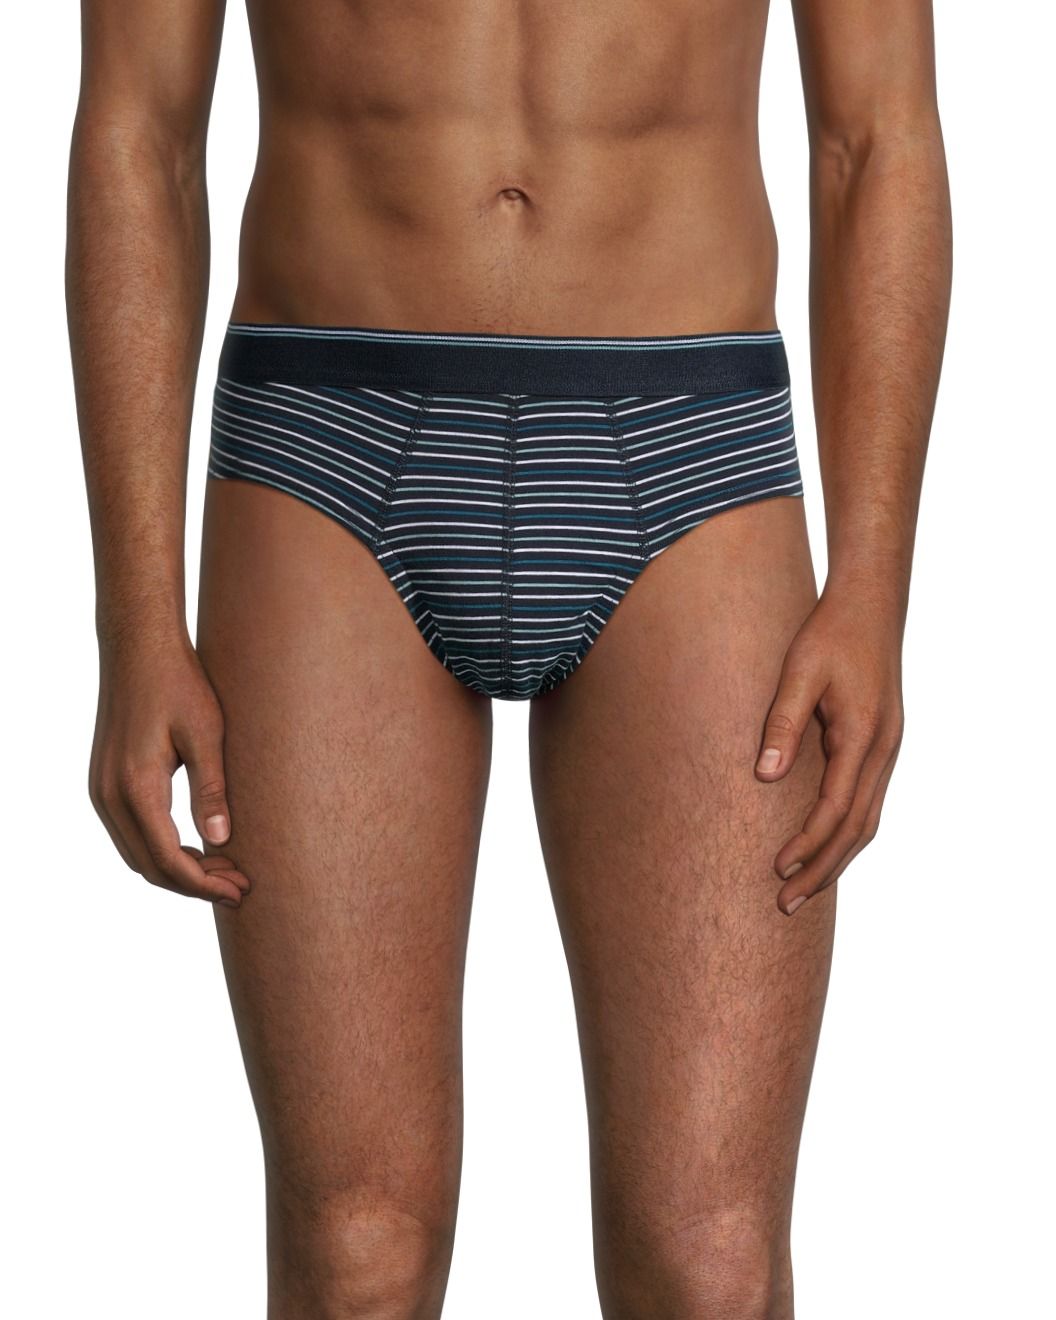 Denver Hayes Men's All Day Comfort Trunk Brief Underwear